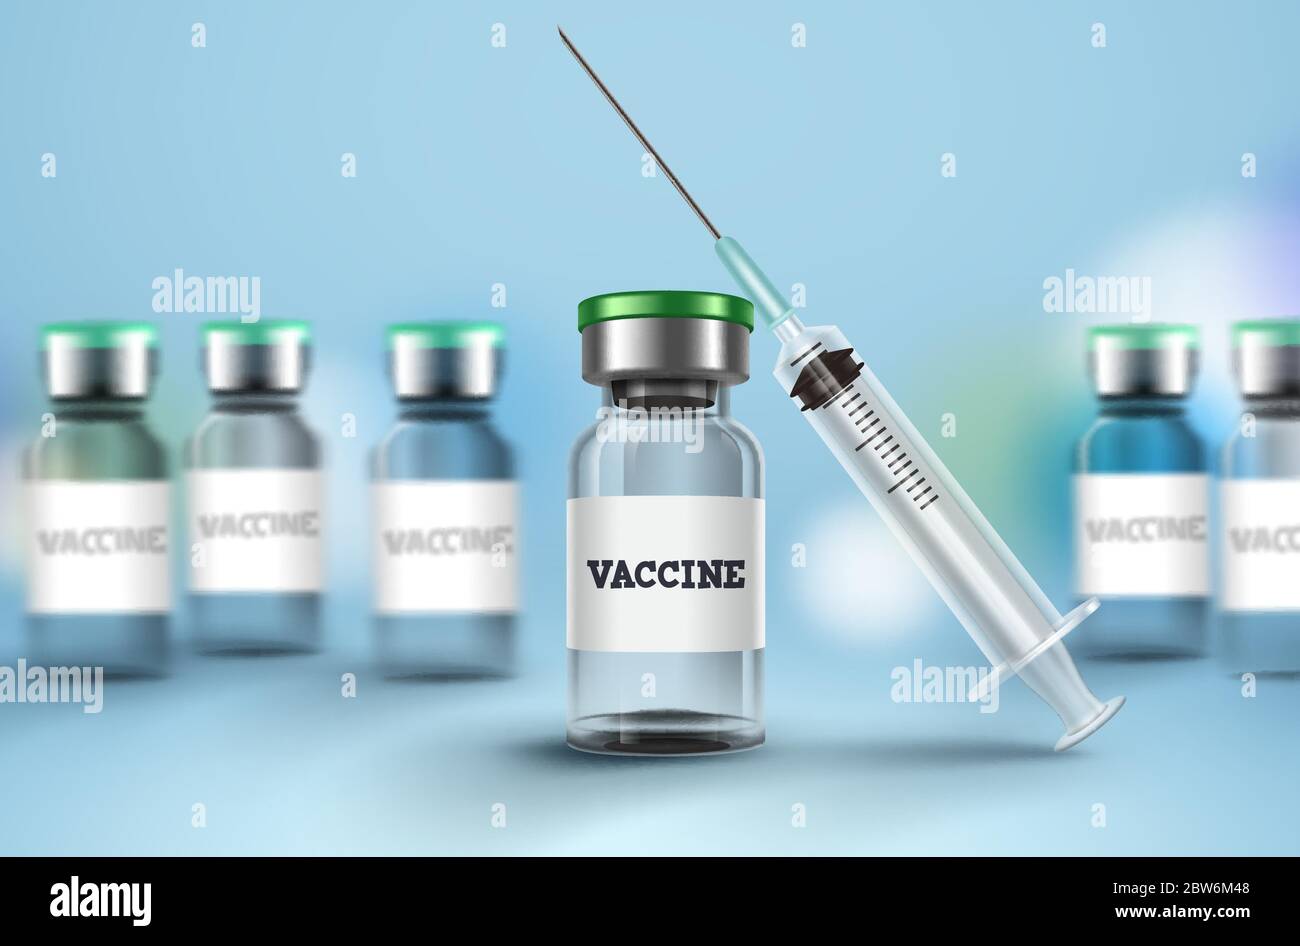 Hintergrund des Impfstoffs und der Spritze. Impfflasche und Spritze Injektion für Covid-19 Coronavirus Impfung und Impfung Medikamente Stock Vektor